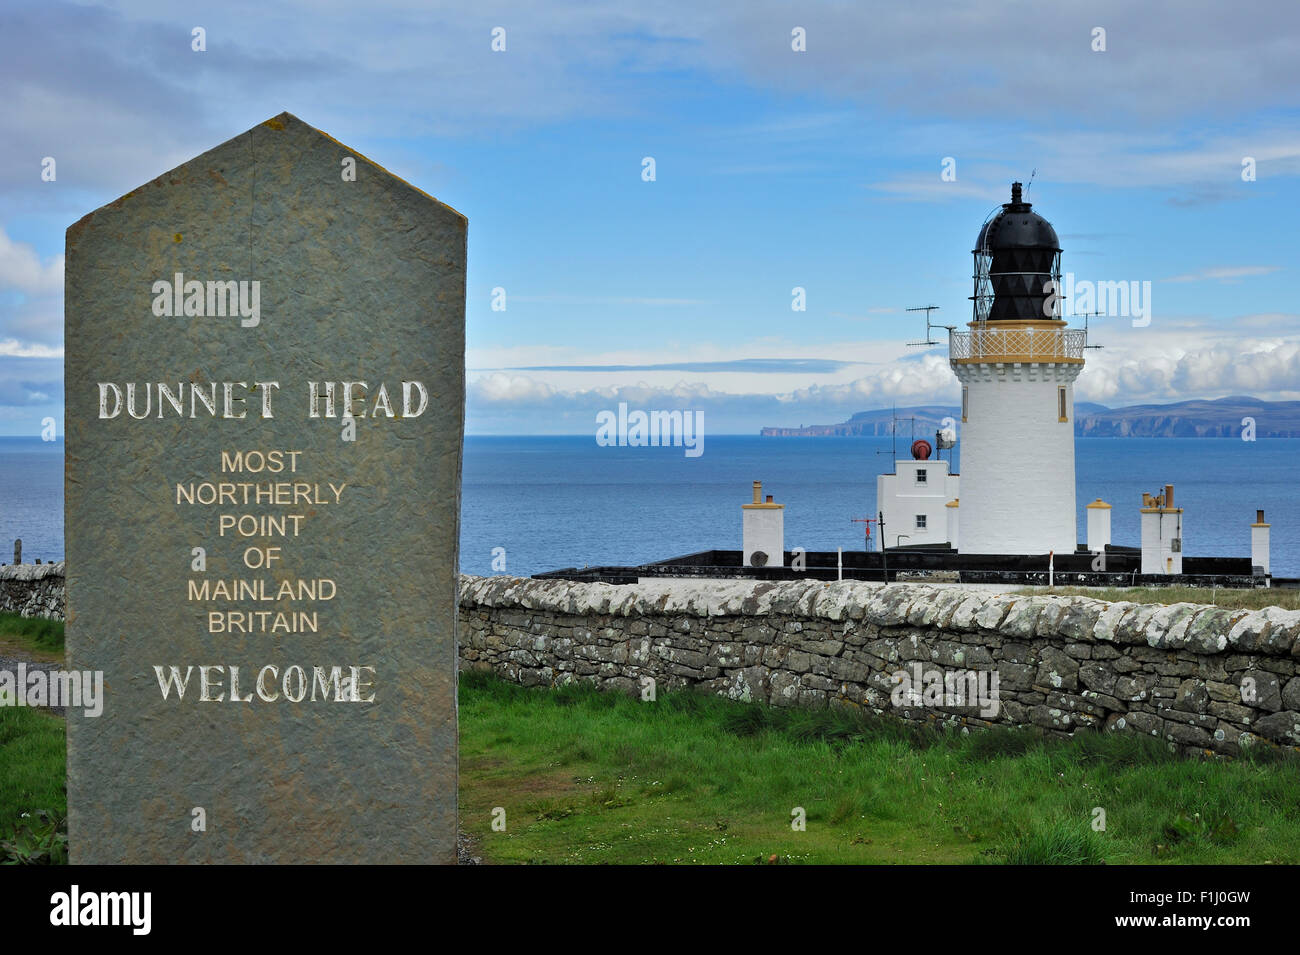 Dunnet Head, le point le plus au nord de la Grande-Bretagne, Caithness, Highlands, Scotland, UK Banque D'Images